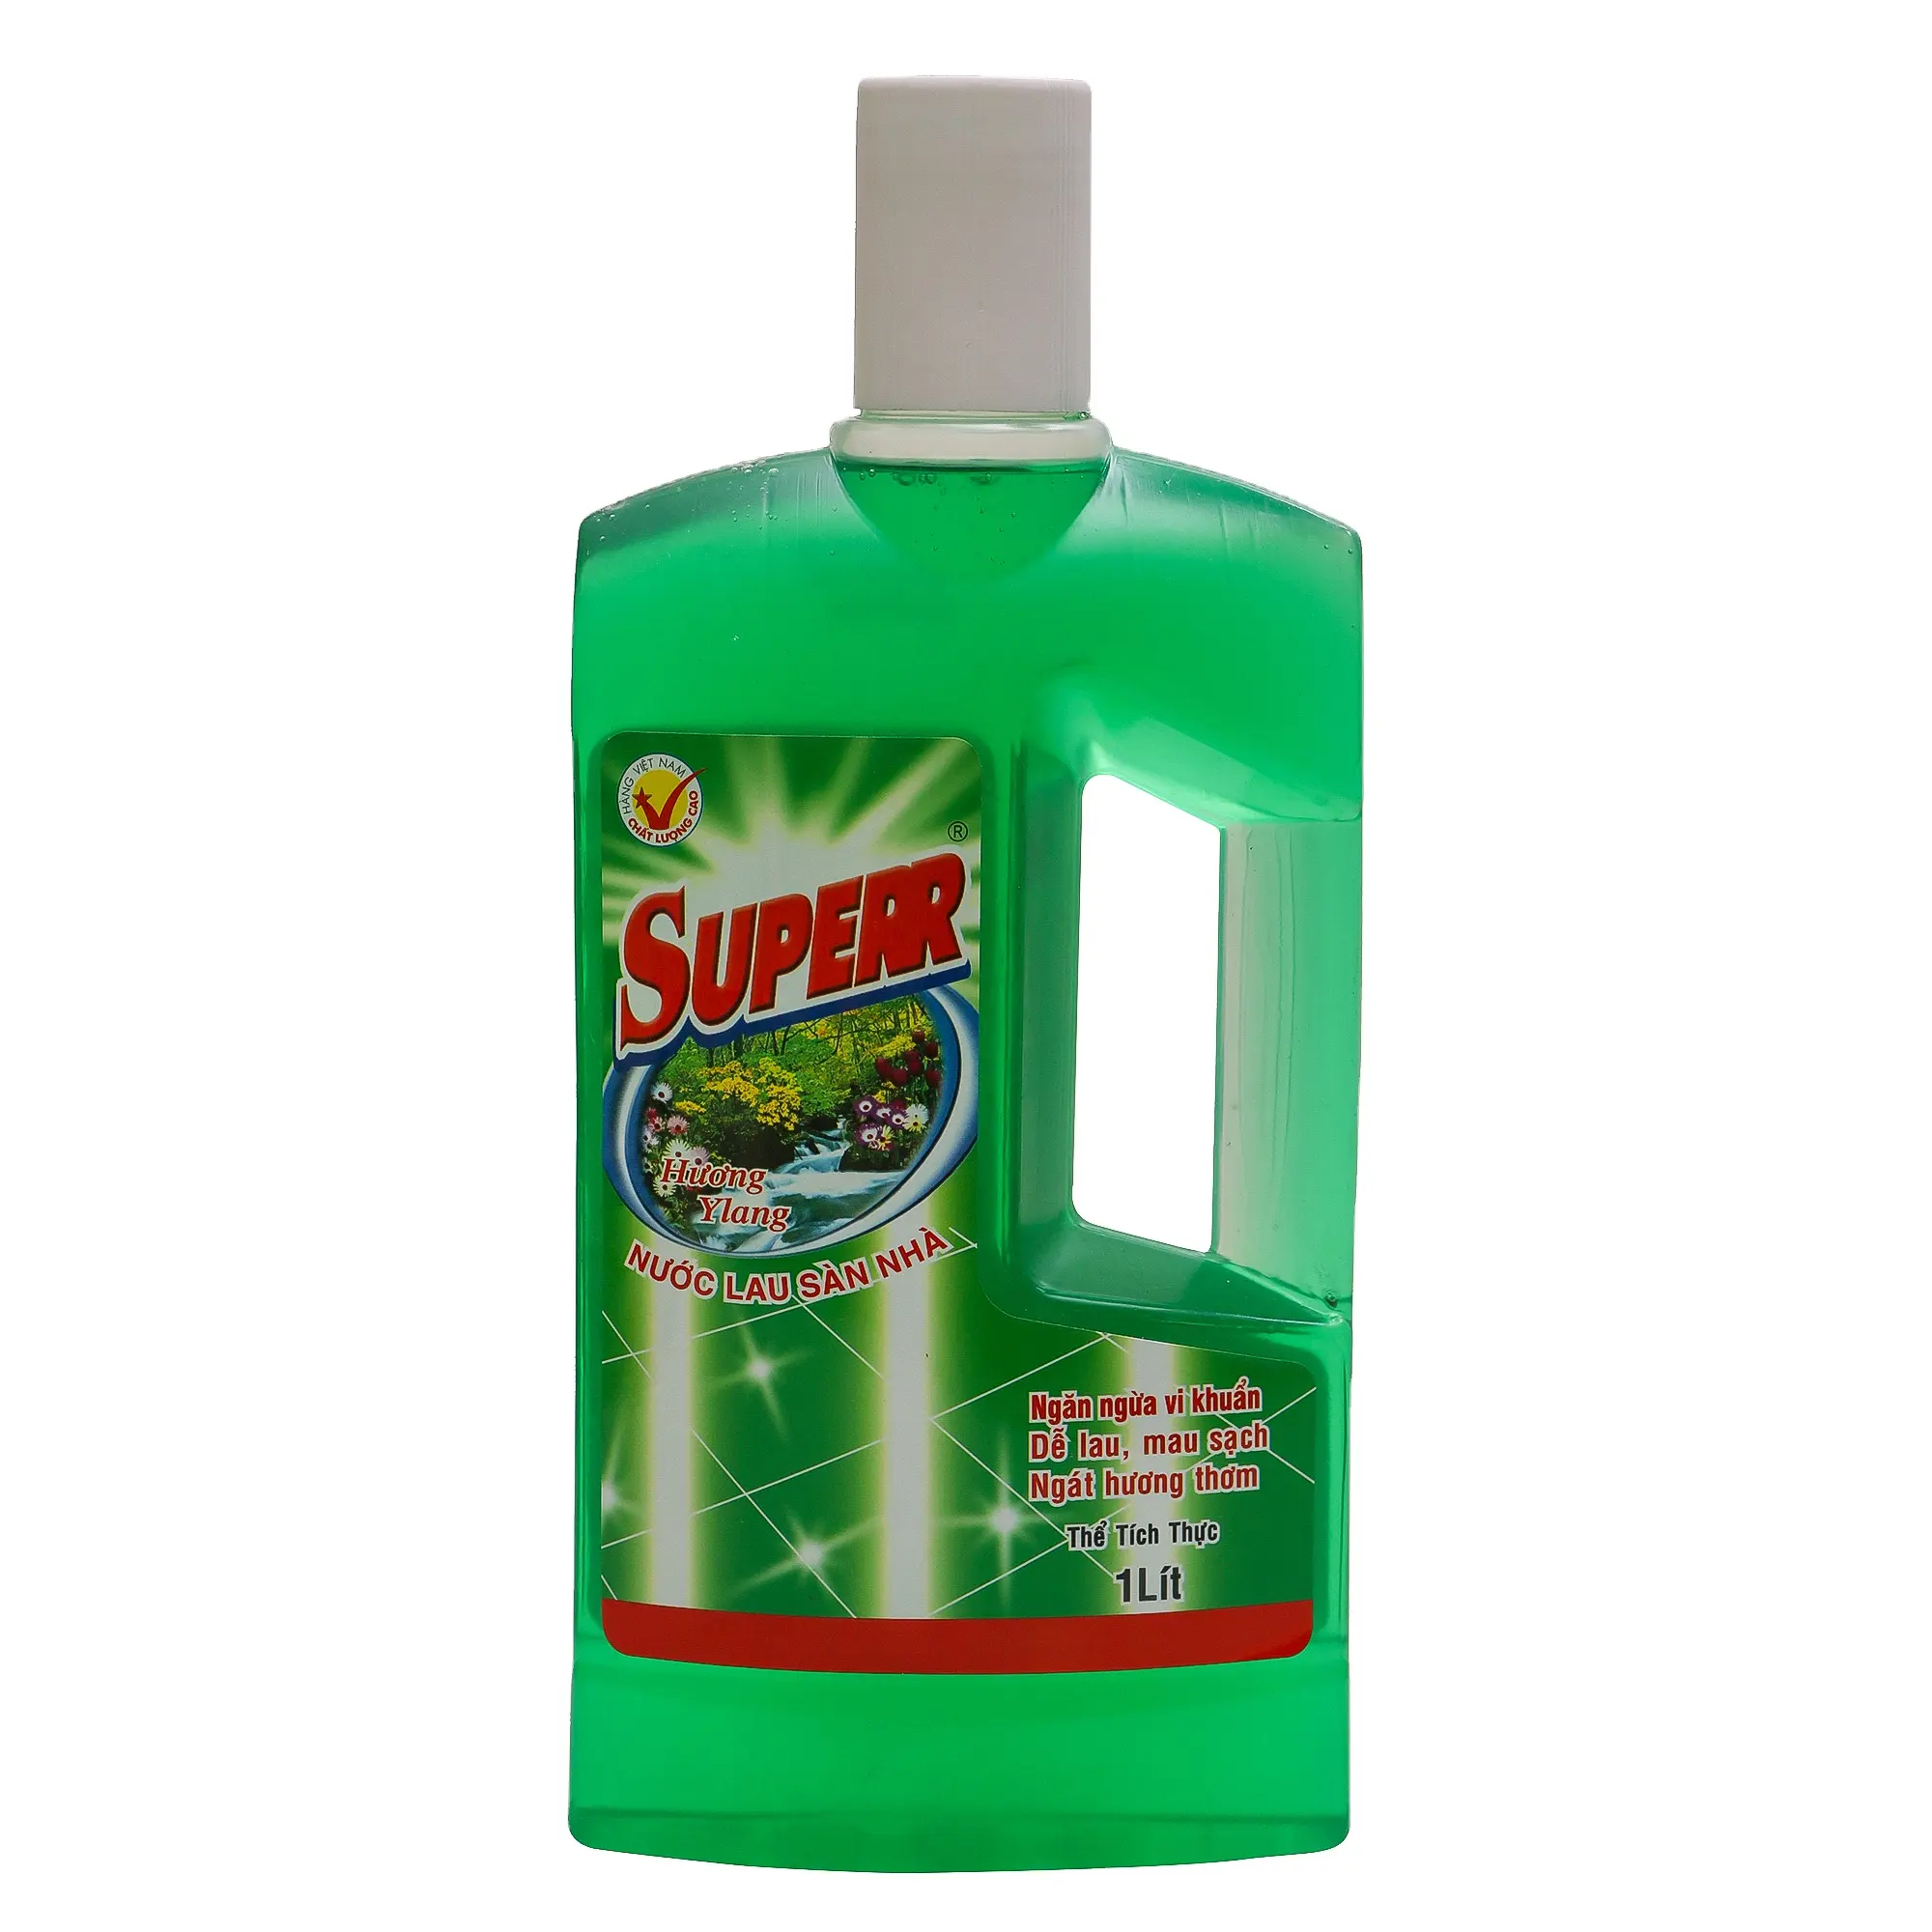 Chất tẩy rửa sàn superr 1L Ylang mùi hương-Loại bỏ hiệu quả vết bẩn và tiêu diệt vi khuẩn-Sản xuất tại Việt Nam-Sẵn Sàng xuất khẩu